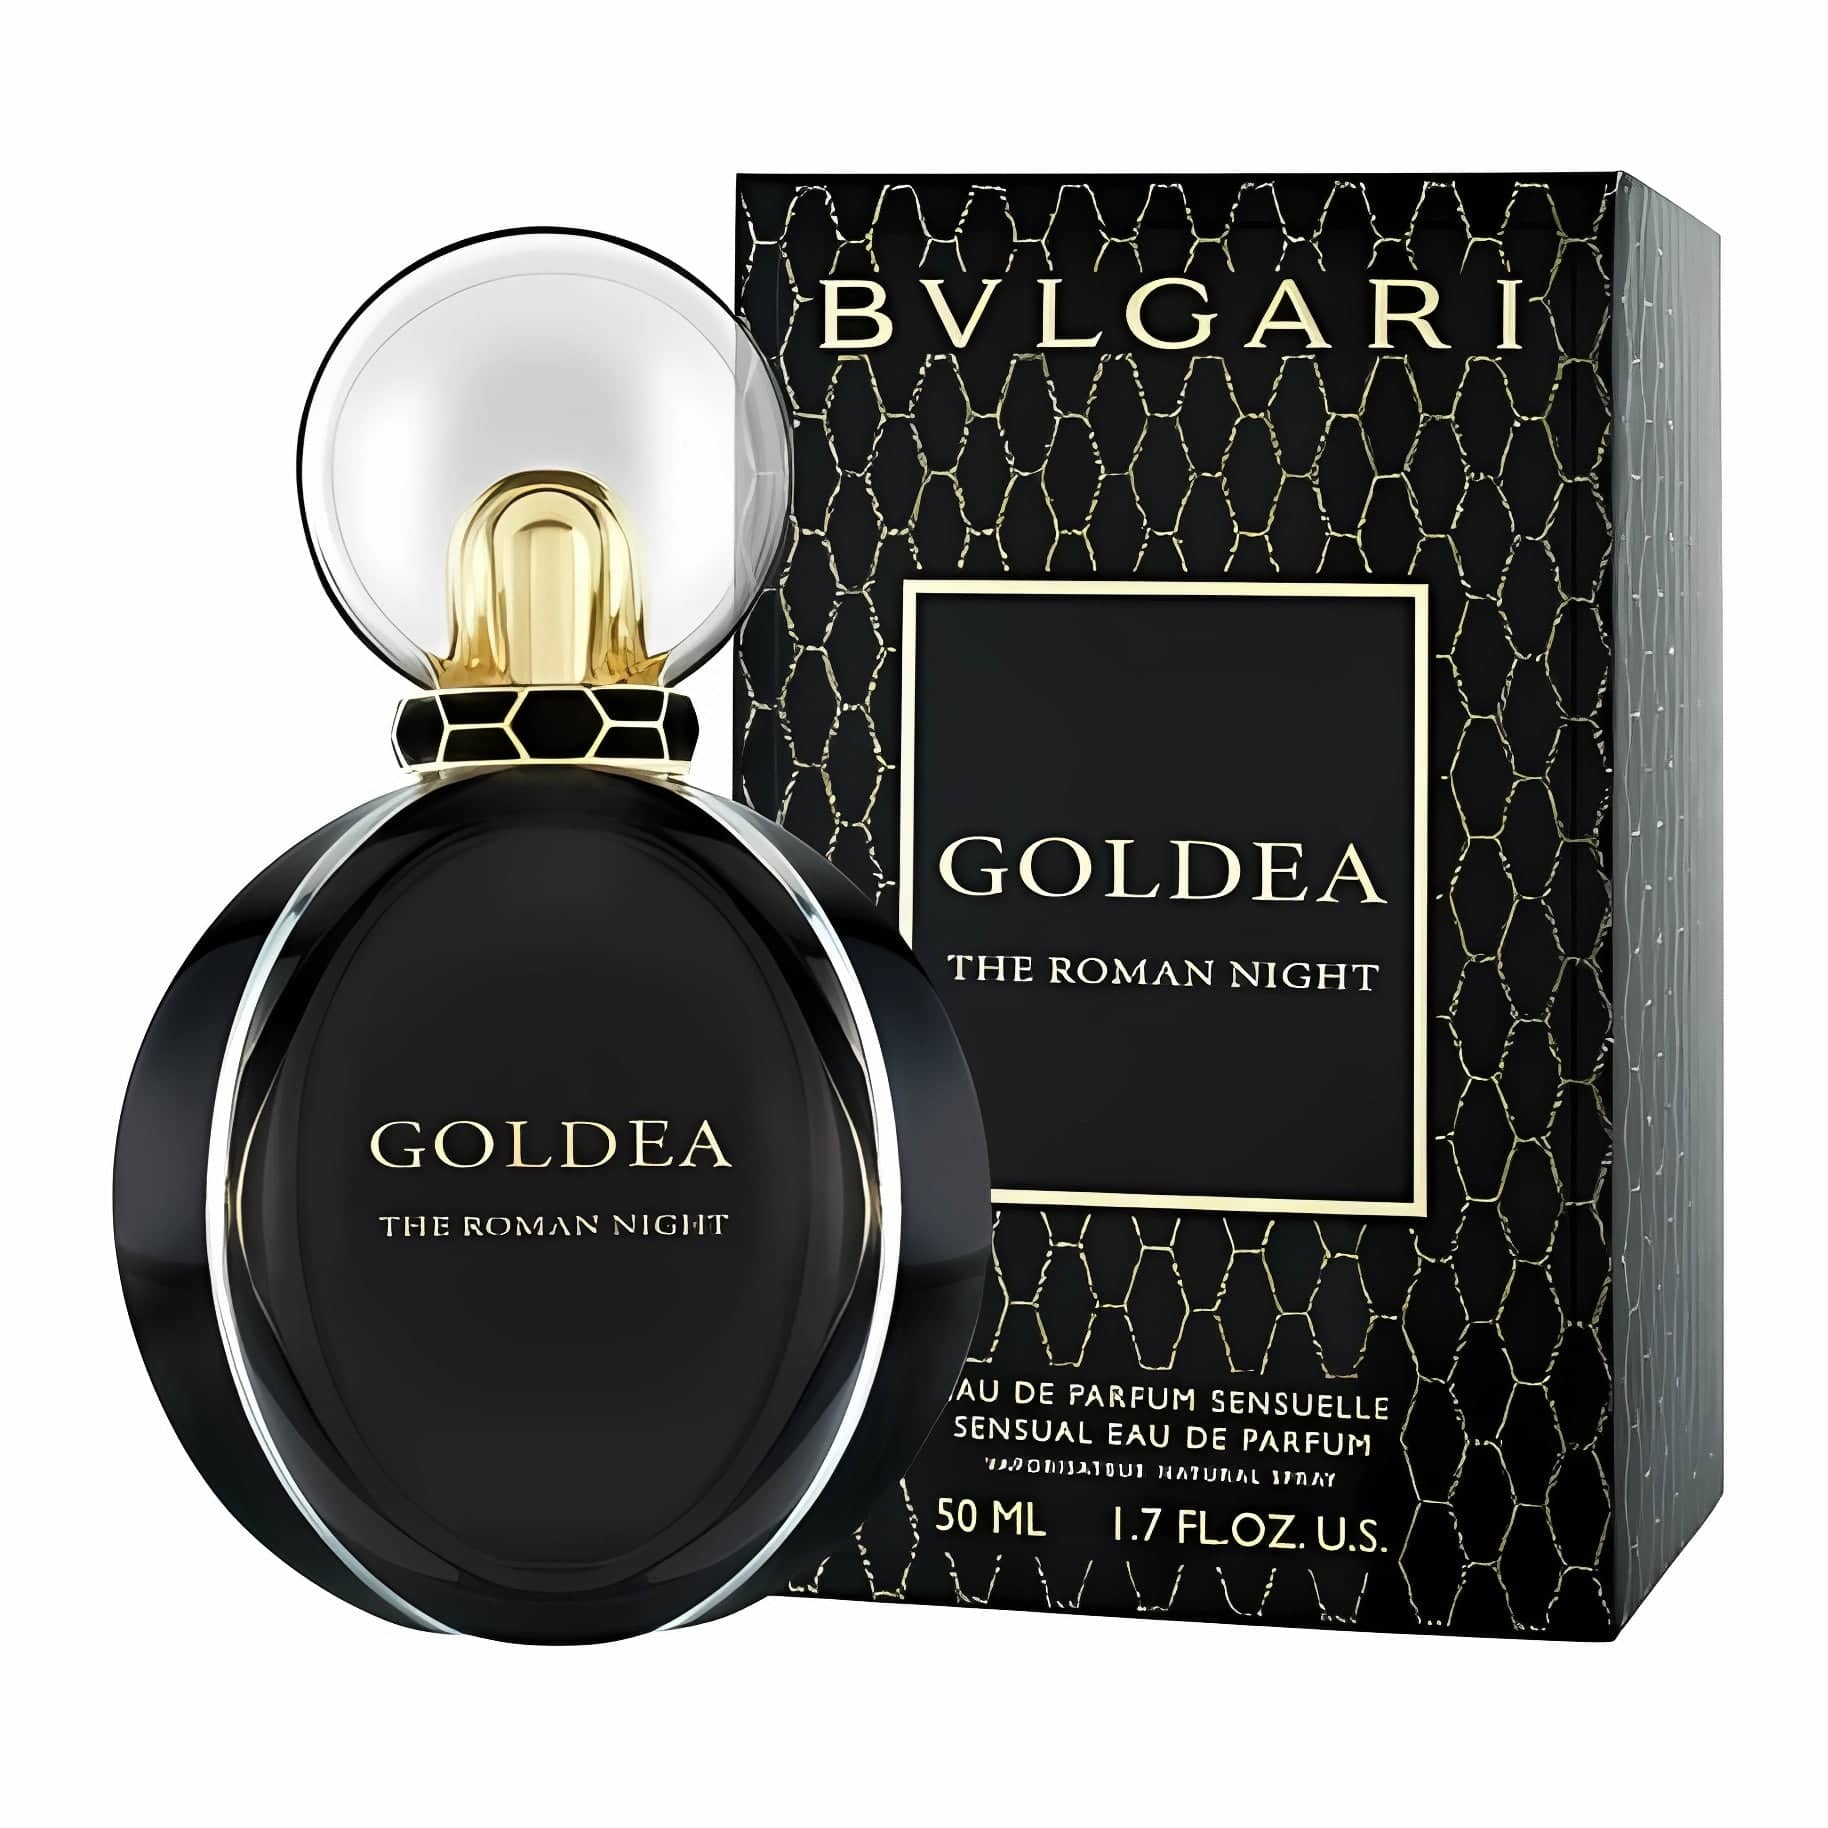 GOLDEA THE ROMAN NIGHT Eau de Parfum